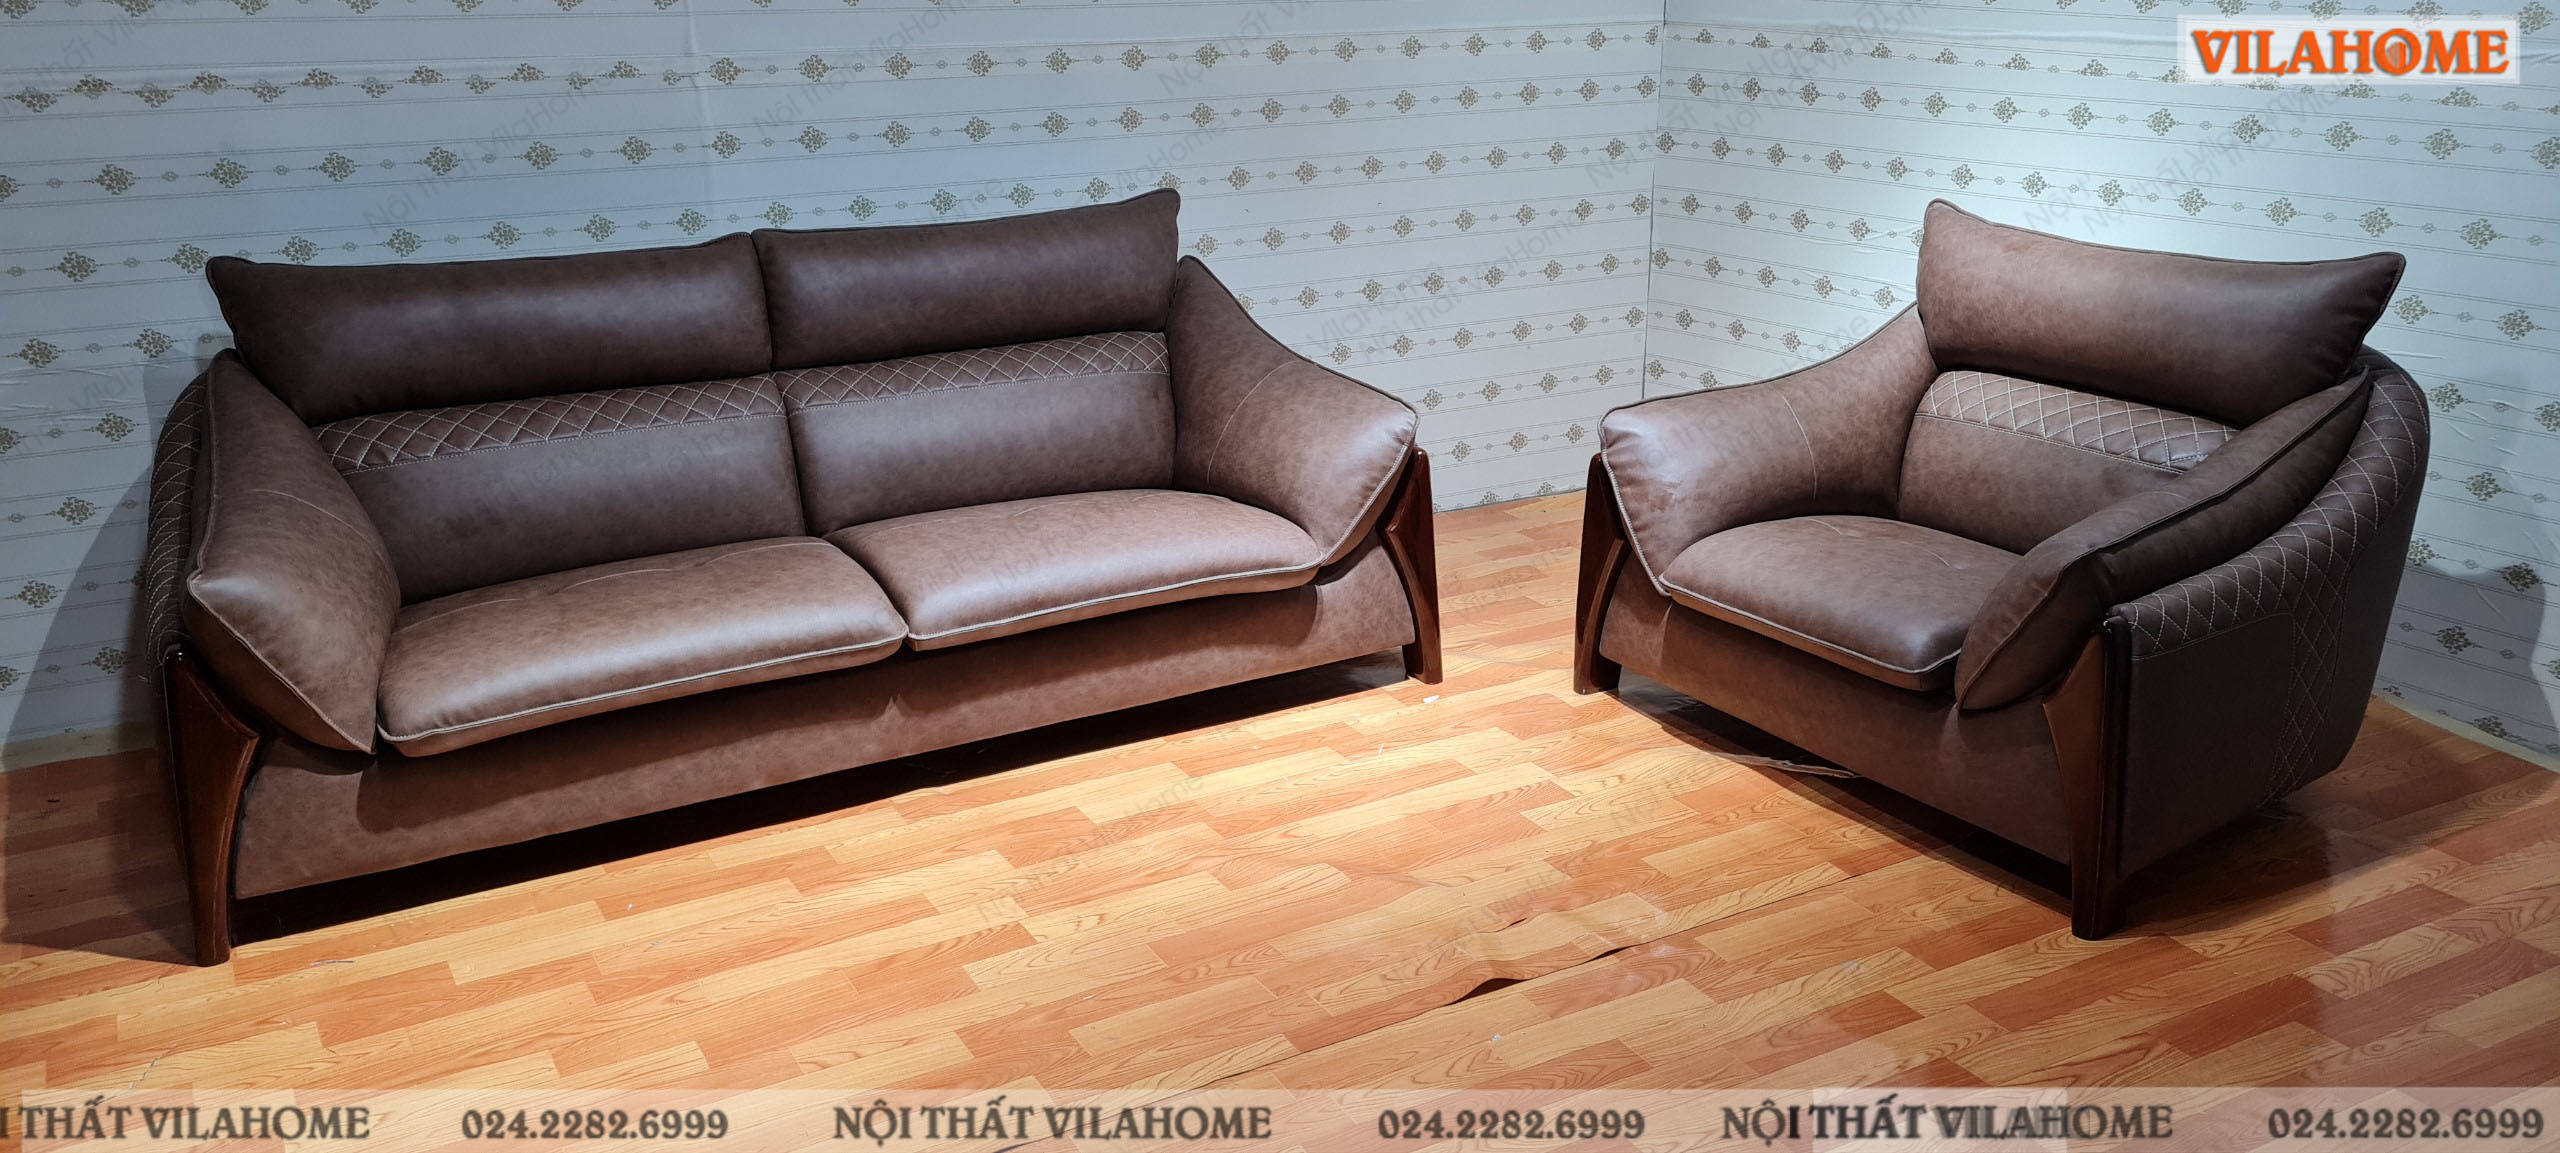 Bộ ghế sofa da phòng khách VilaHome cho khách hàng sofa ở phường Thanh Xuân Trung bàn giao